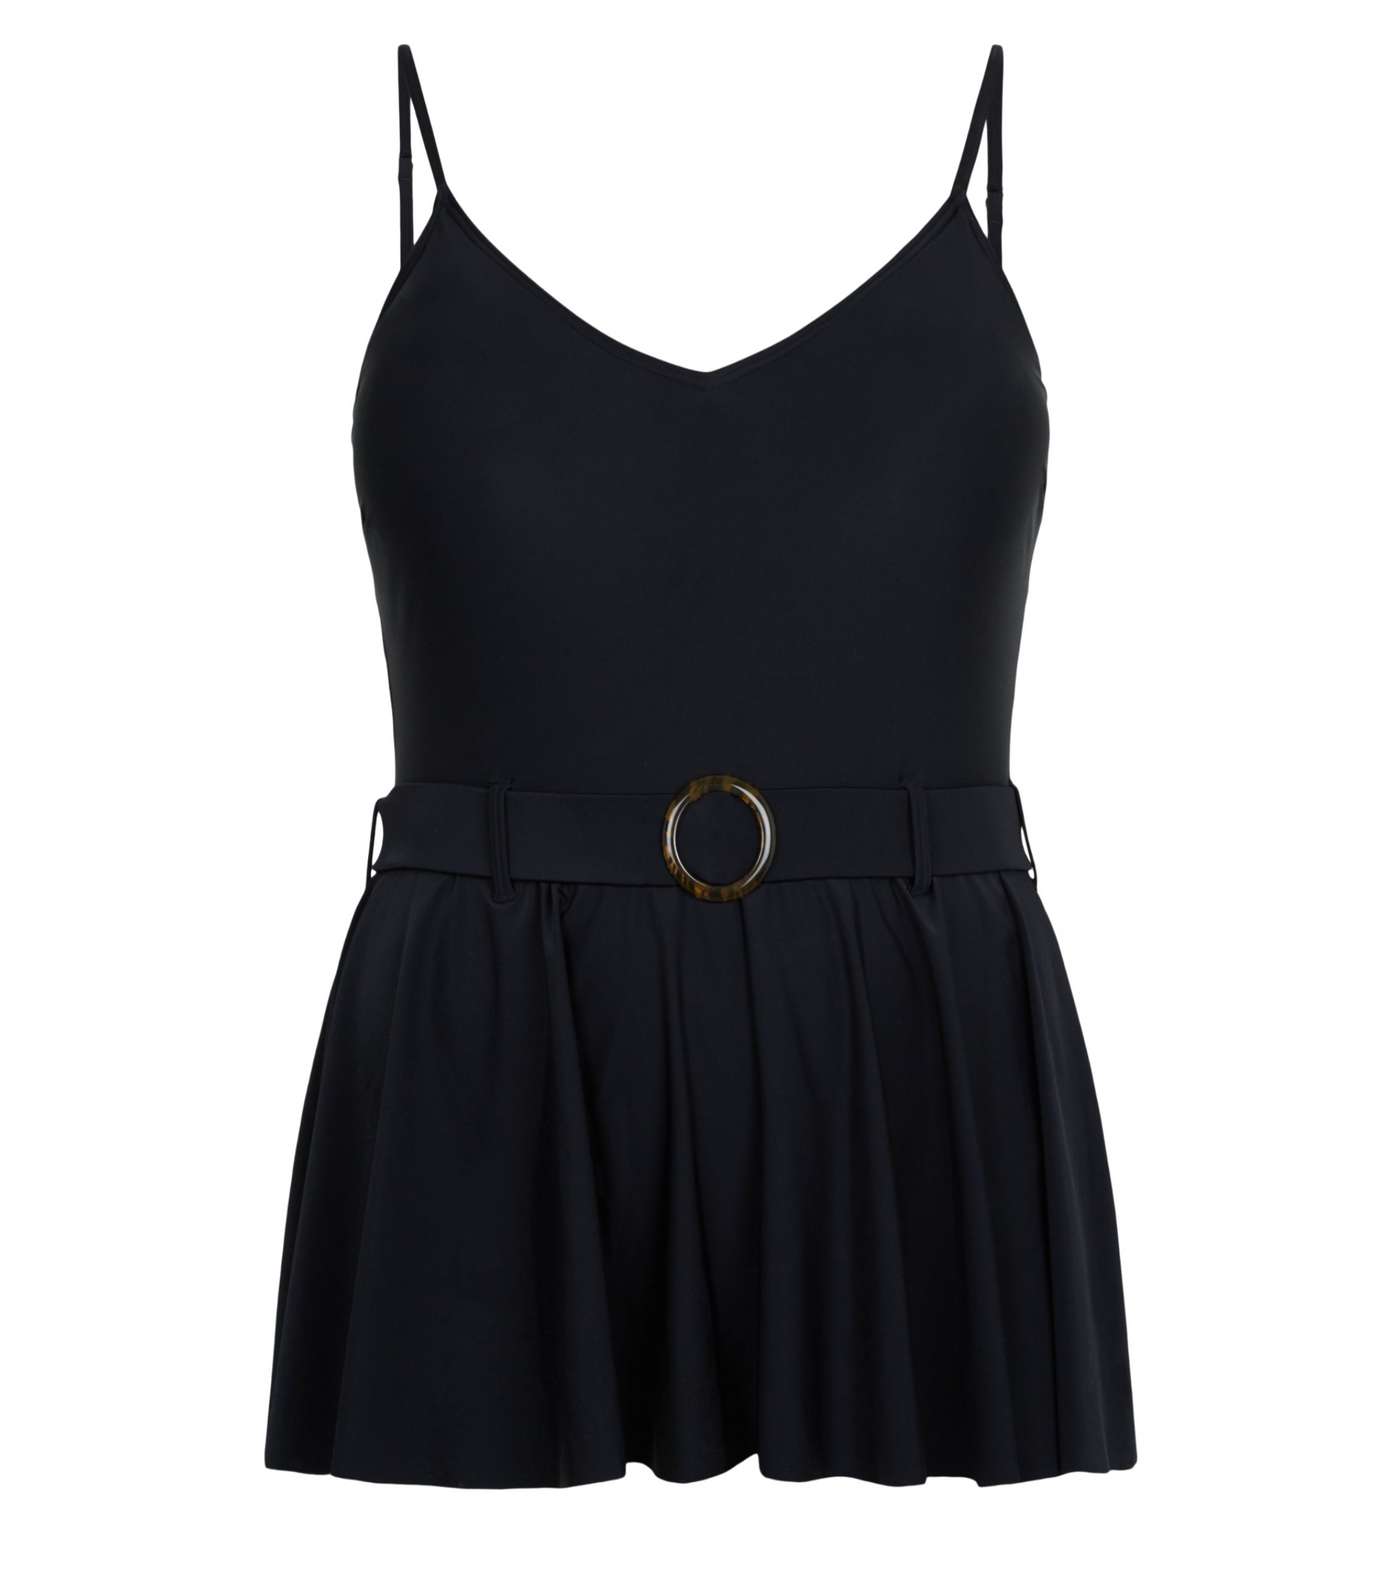 Black 'Lift & Shape' Skirt Swimsuit Image 4